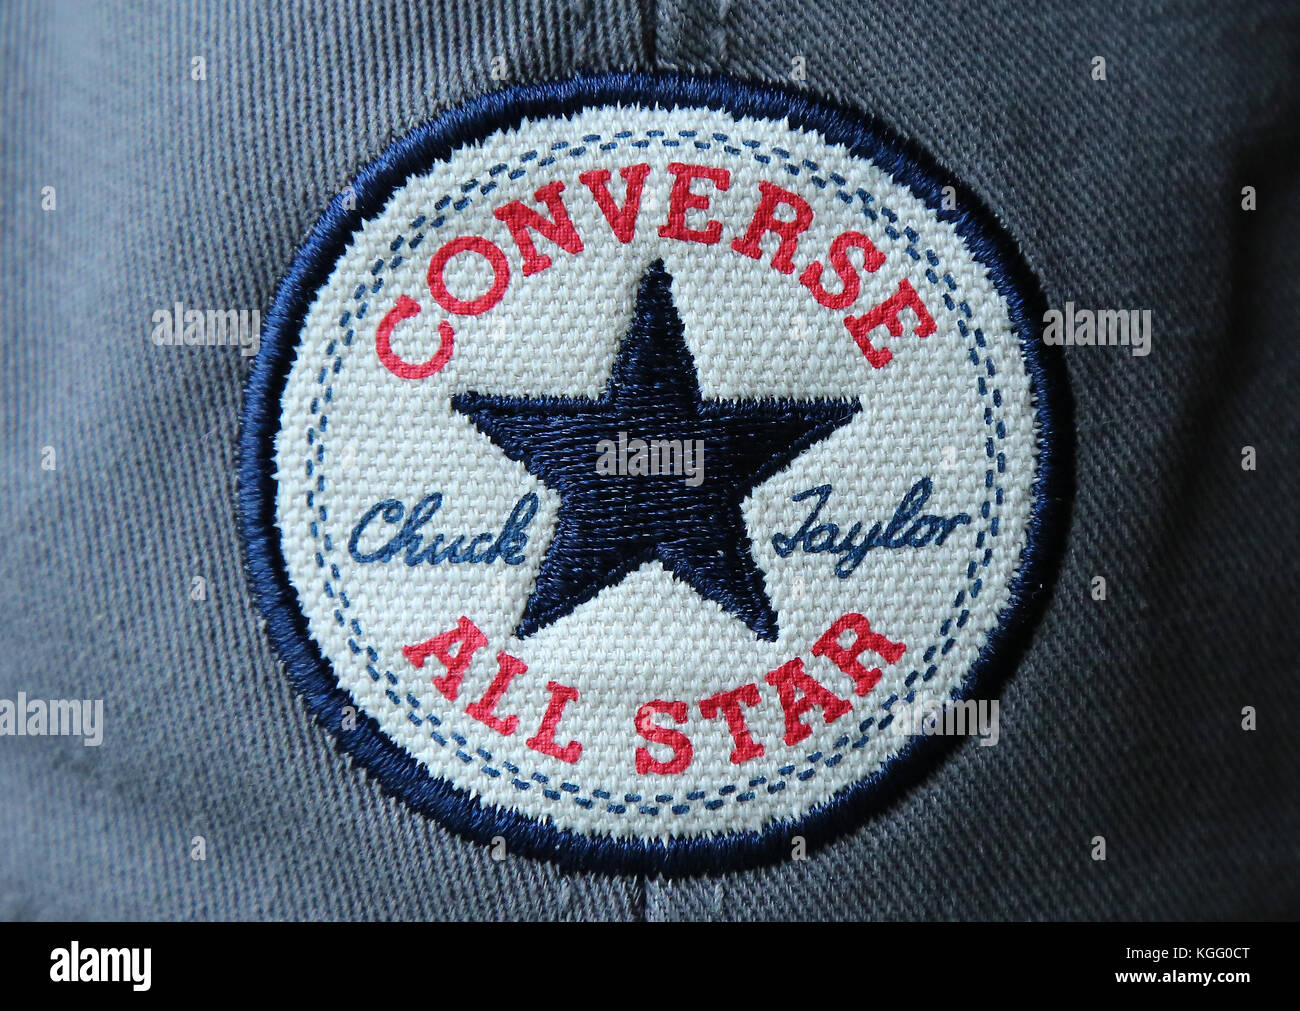 Converse All Star Chuck Taylor Baseball Cap gestickter Schriftzug auf eine  Baseballmütze Stockfotografie - Alamy